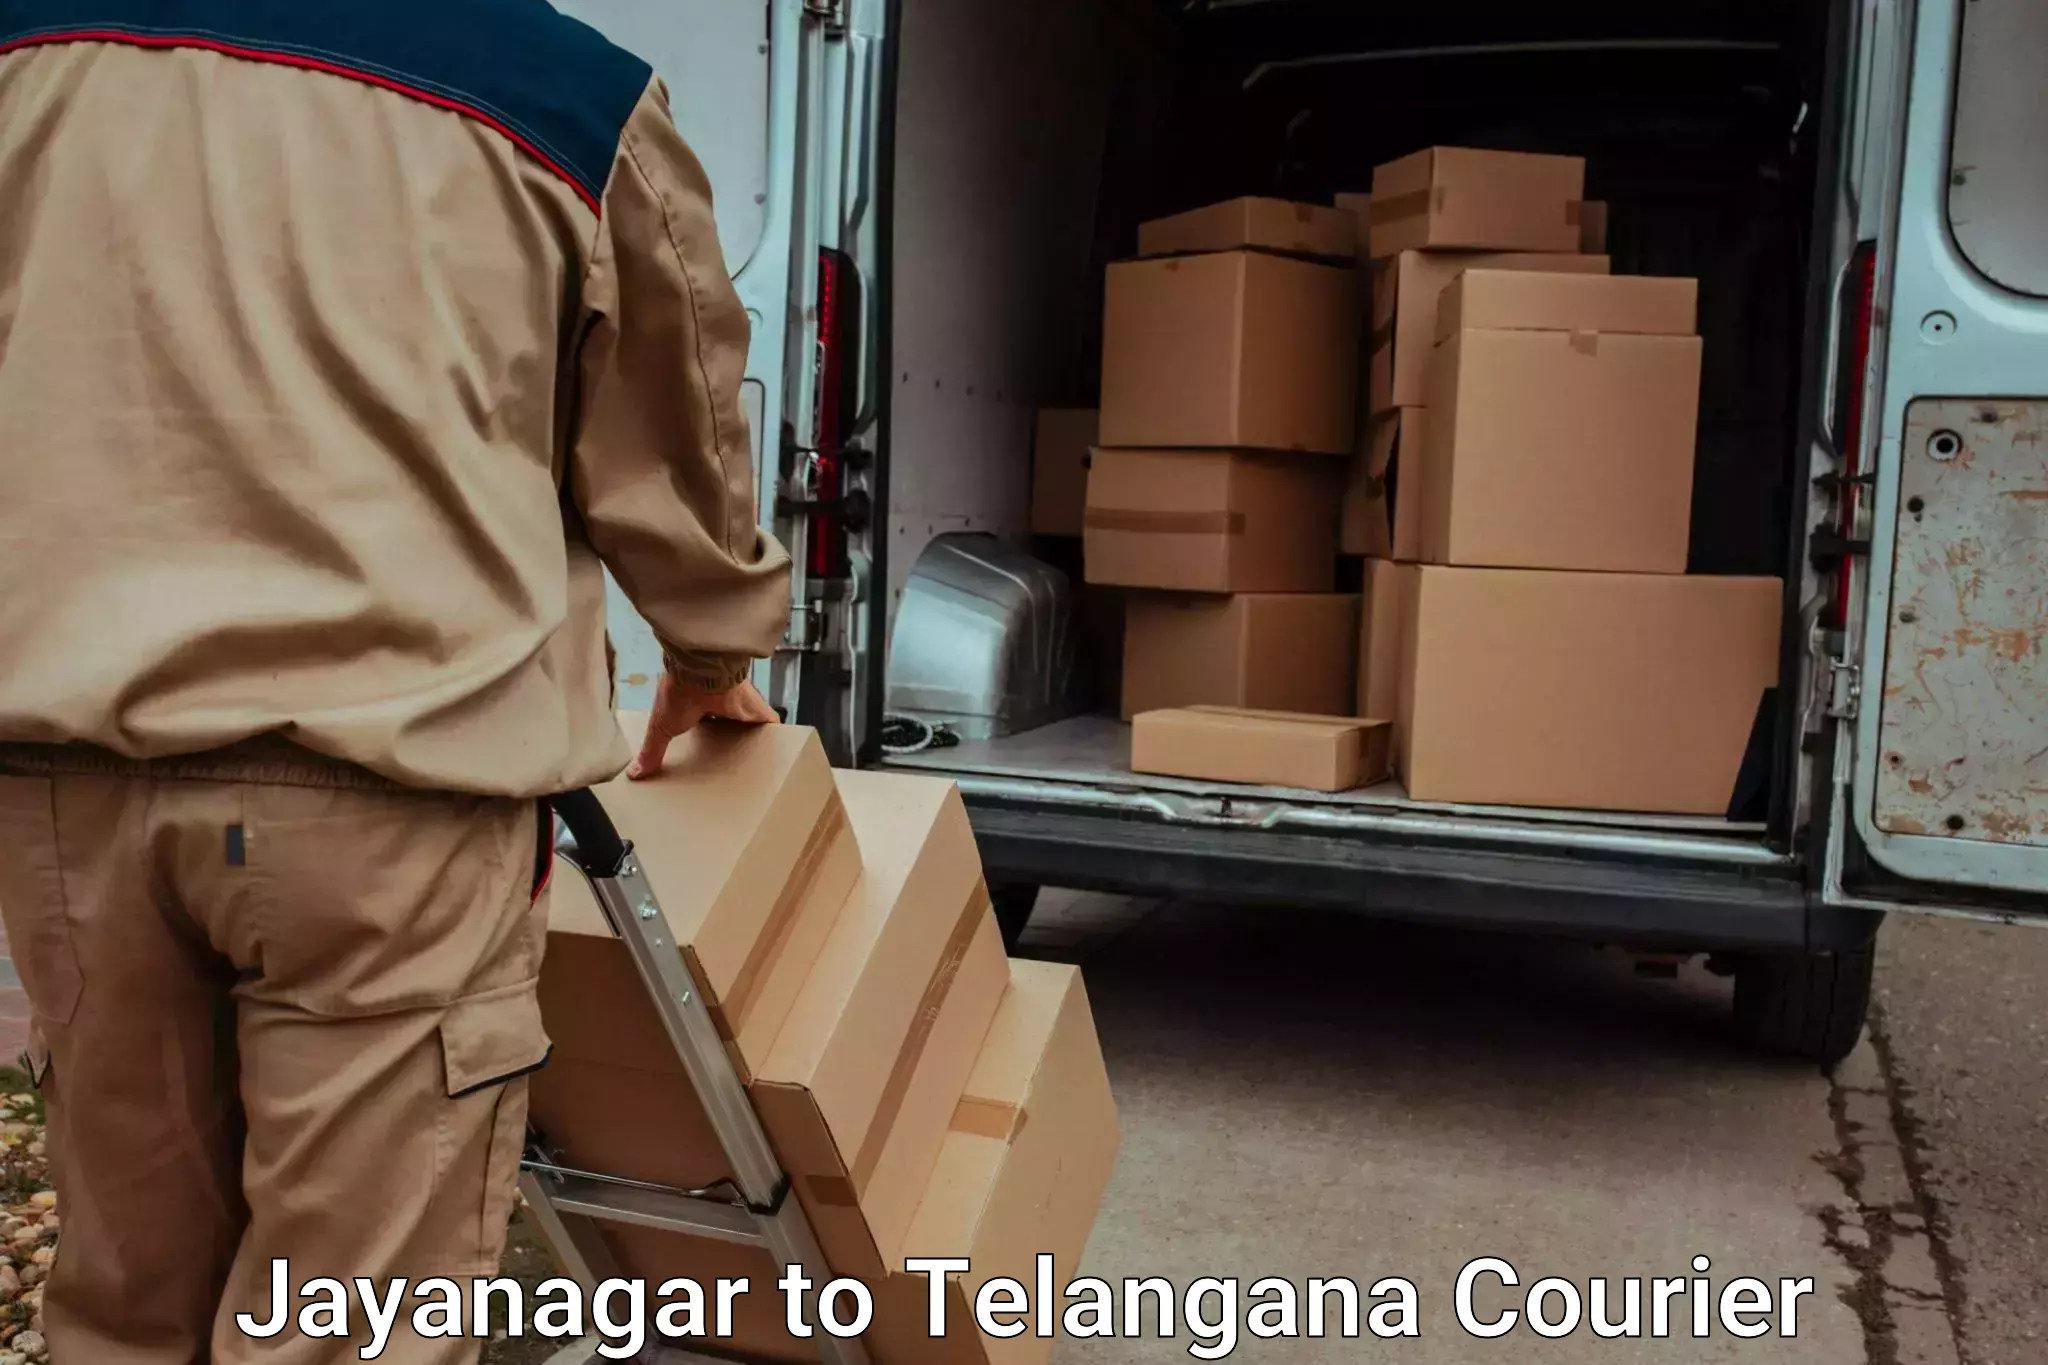 Luggage delivery app Jayanagar to Kothakota